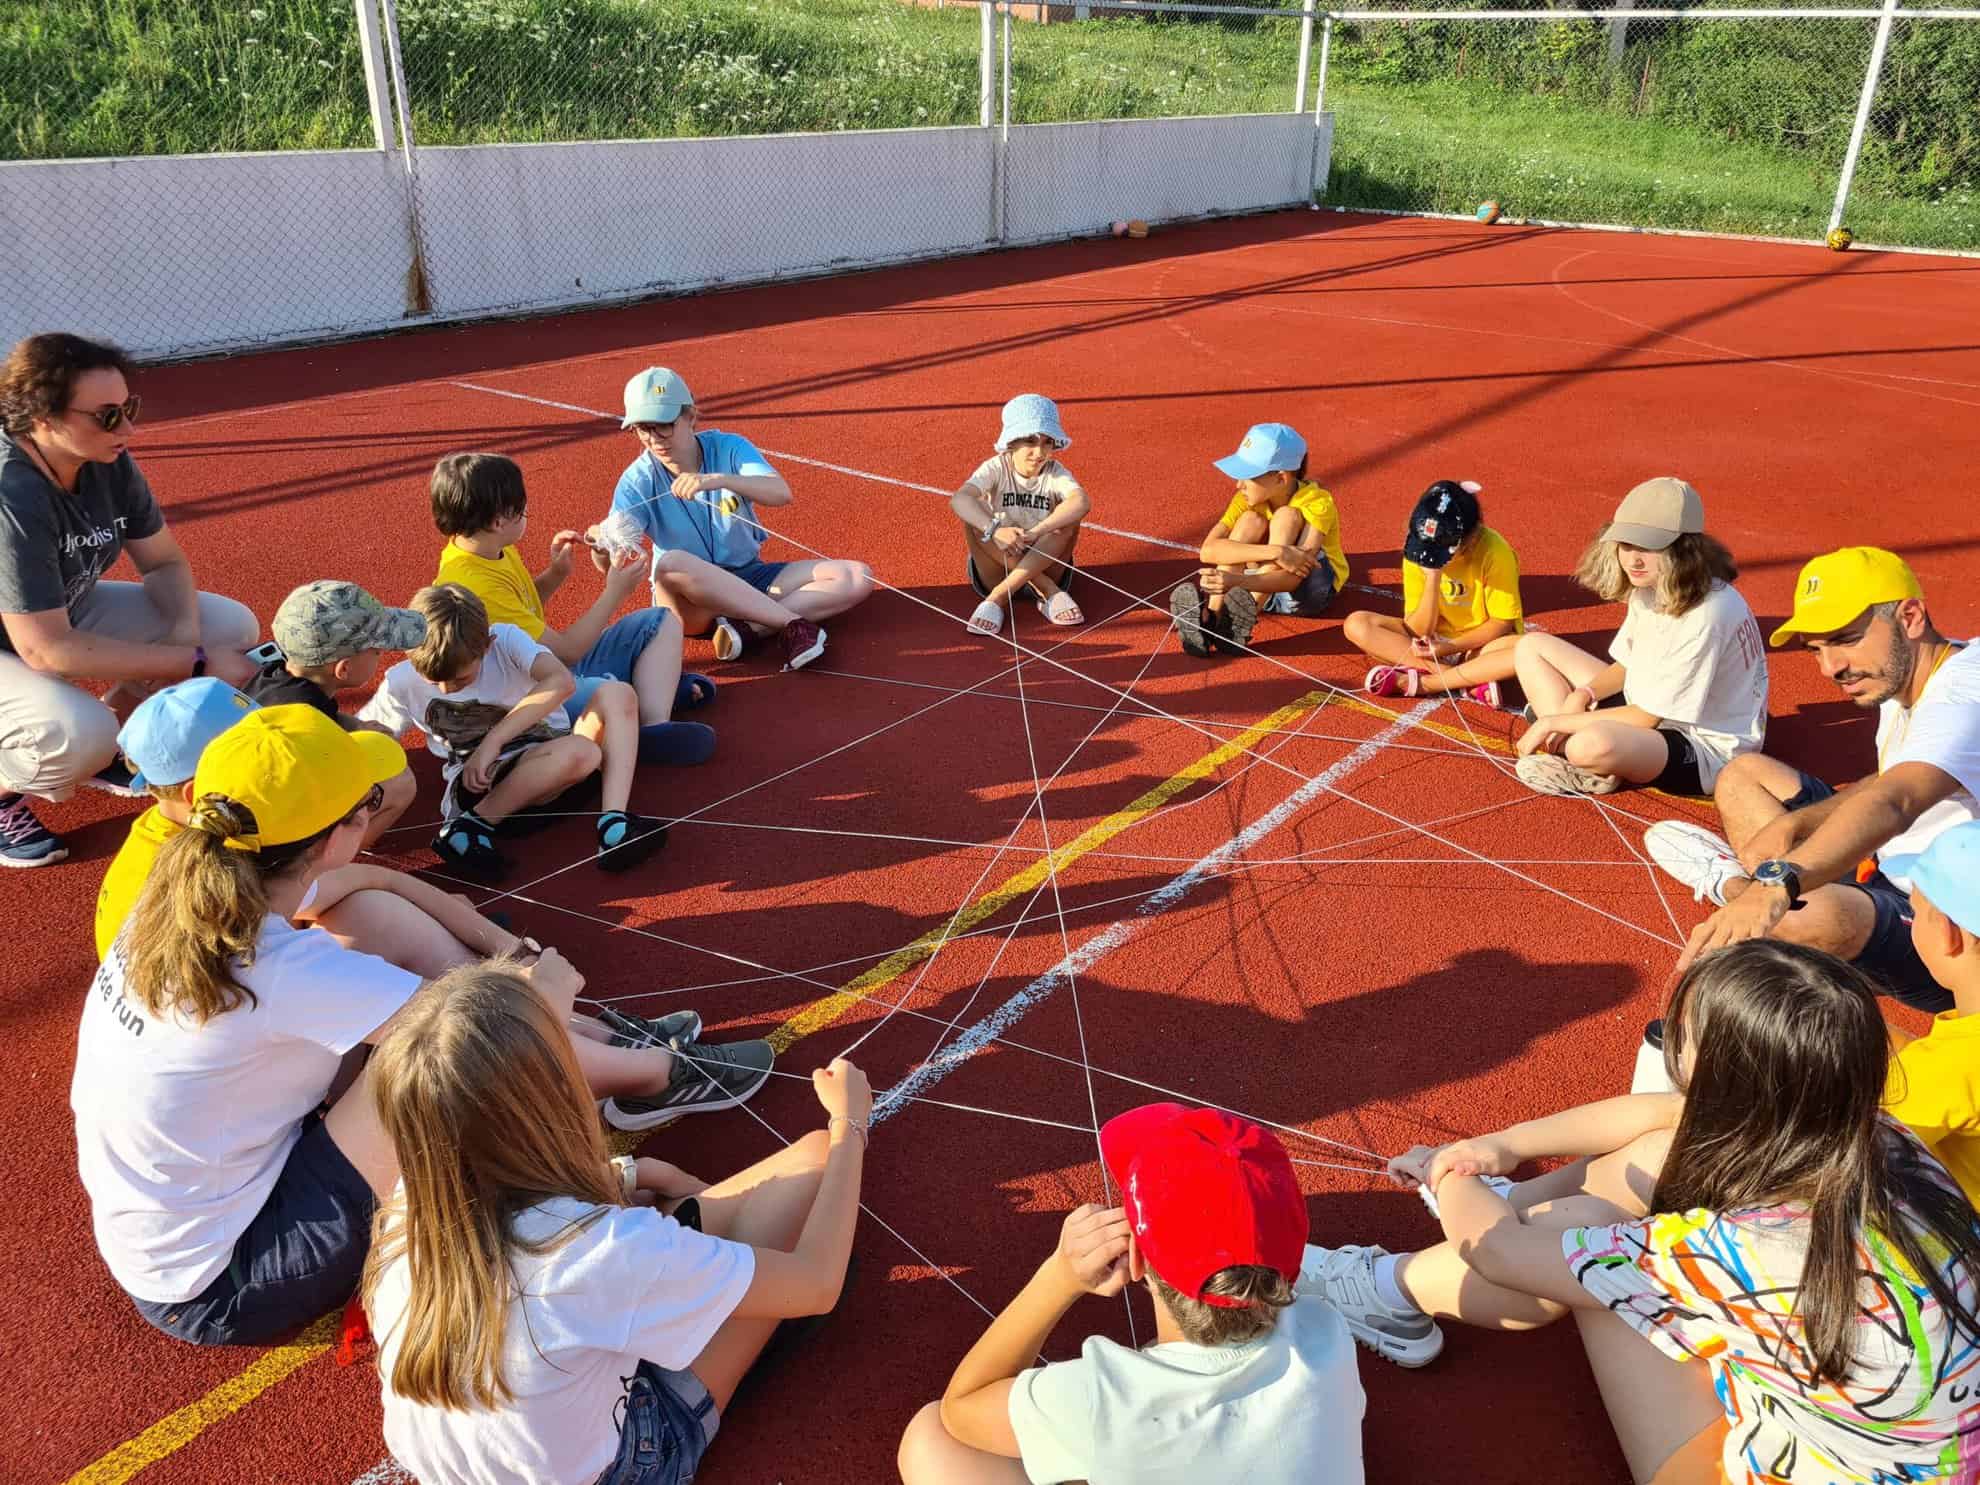 o româncă și o ucraineancă organizează tabere gratuite pentru copii ucraineni și romi la cisnădioara, iacobeni și brateiu